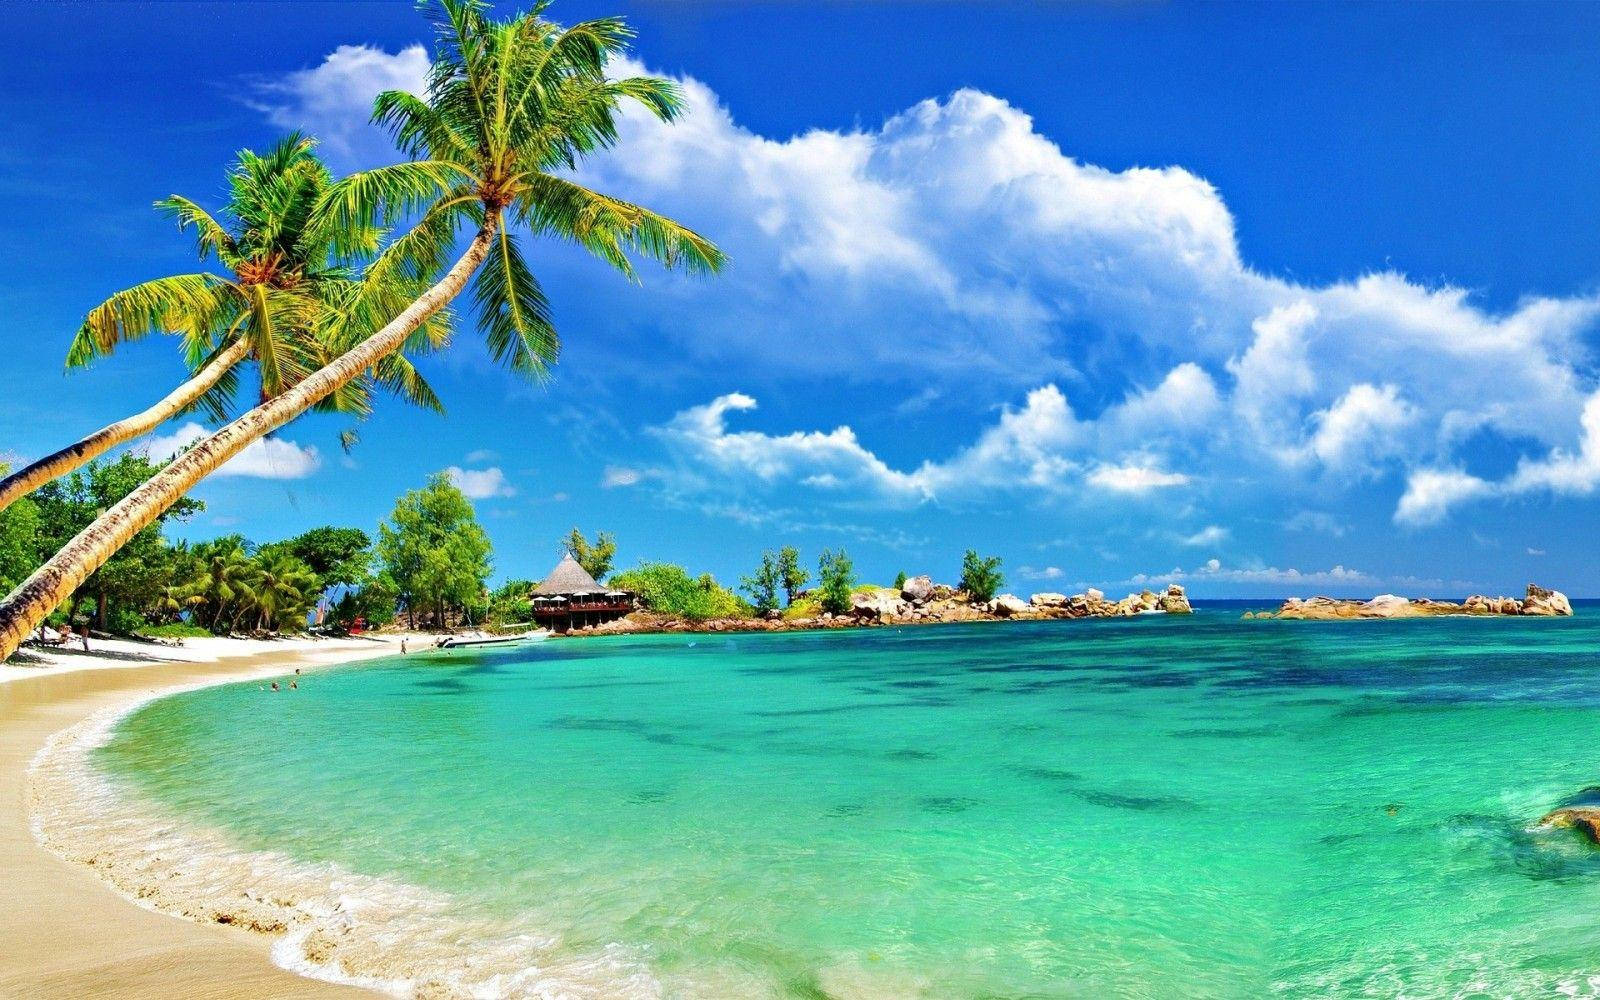 Tropical Beach Desktop Wallpaper